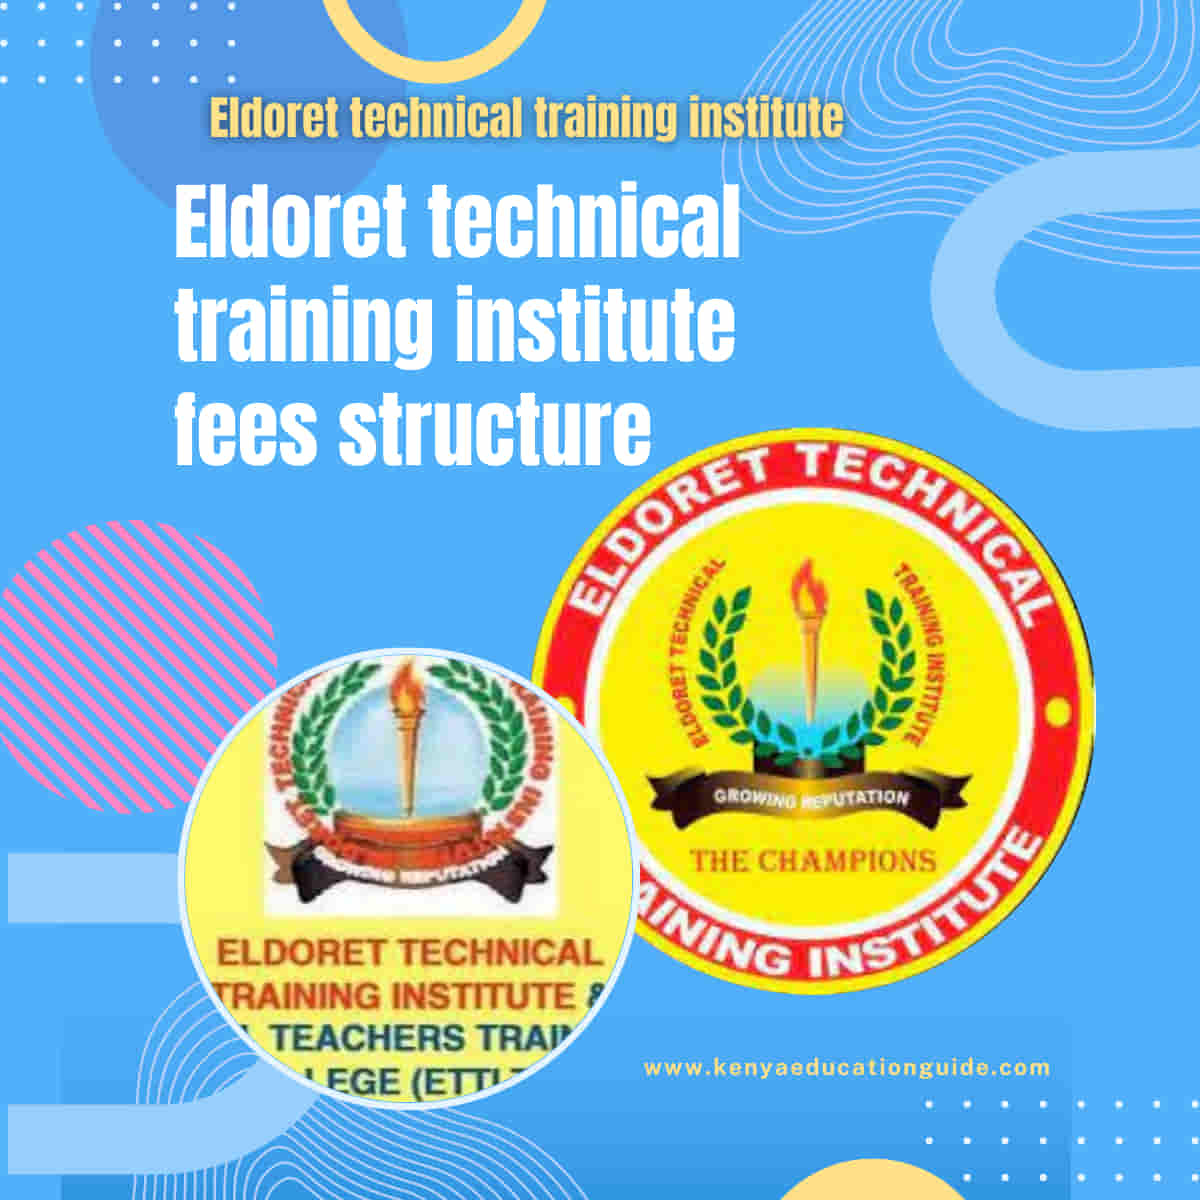 Eldoret technical training institute fees structure